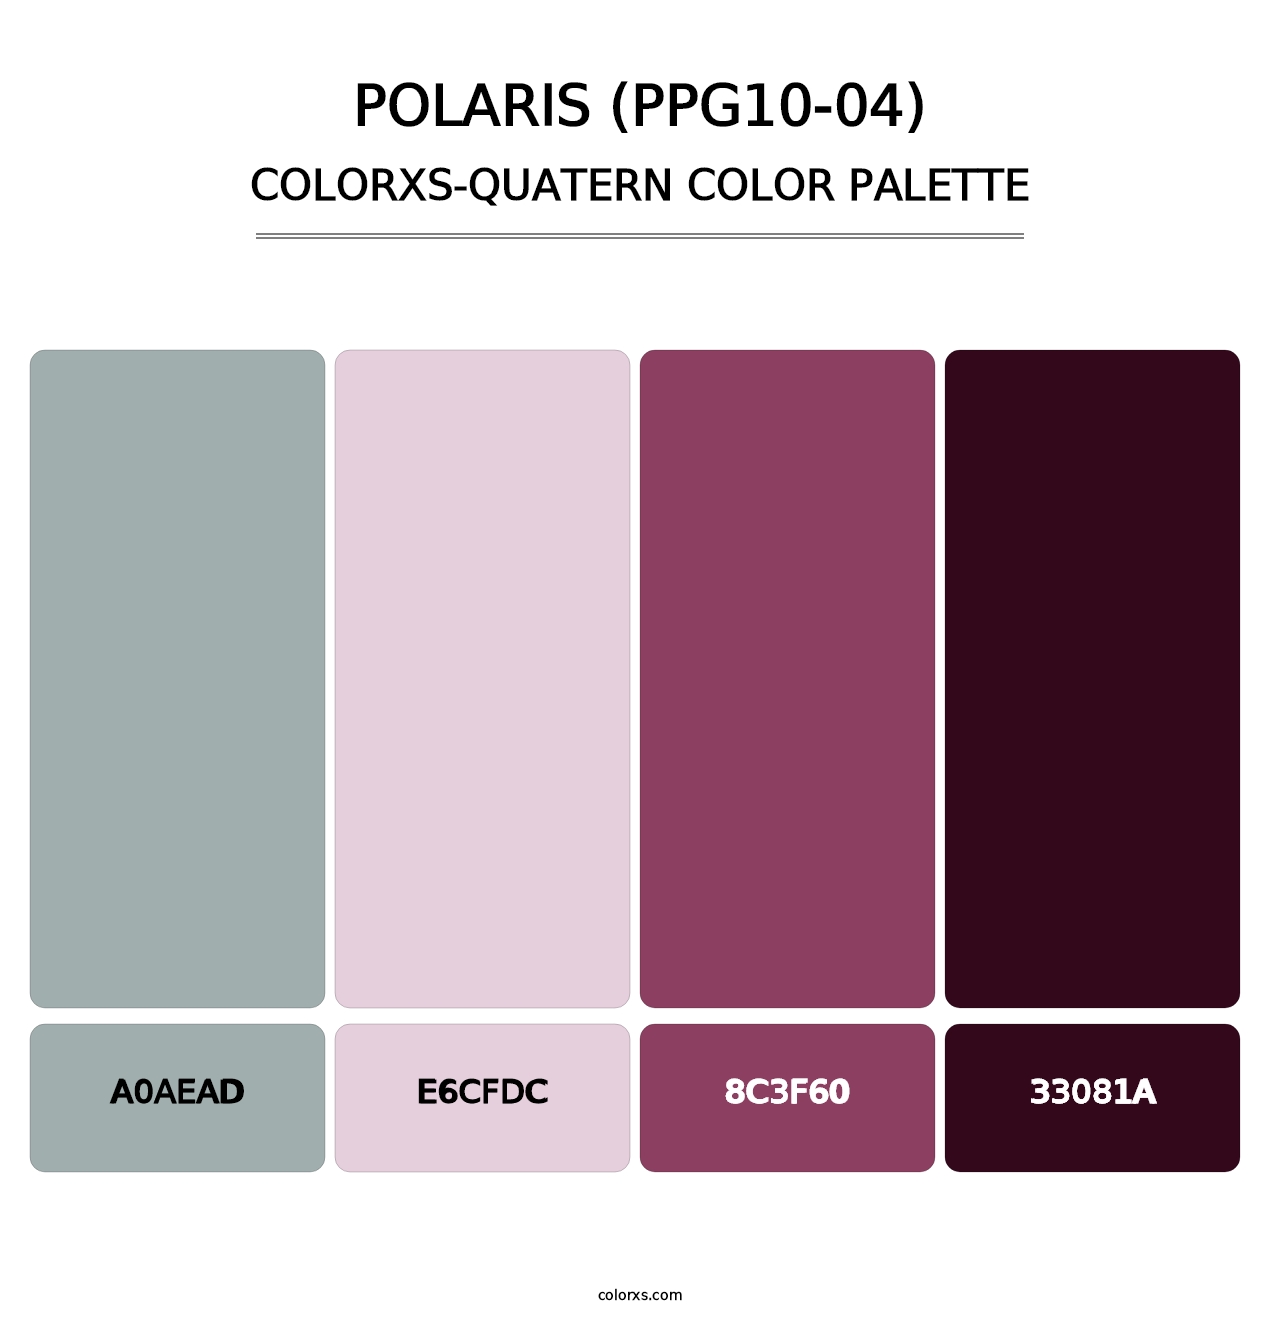 Polaris (PPG10-04) - Colorxs Quatern Palette